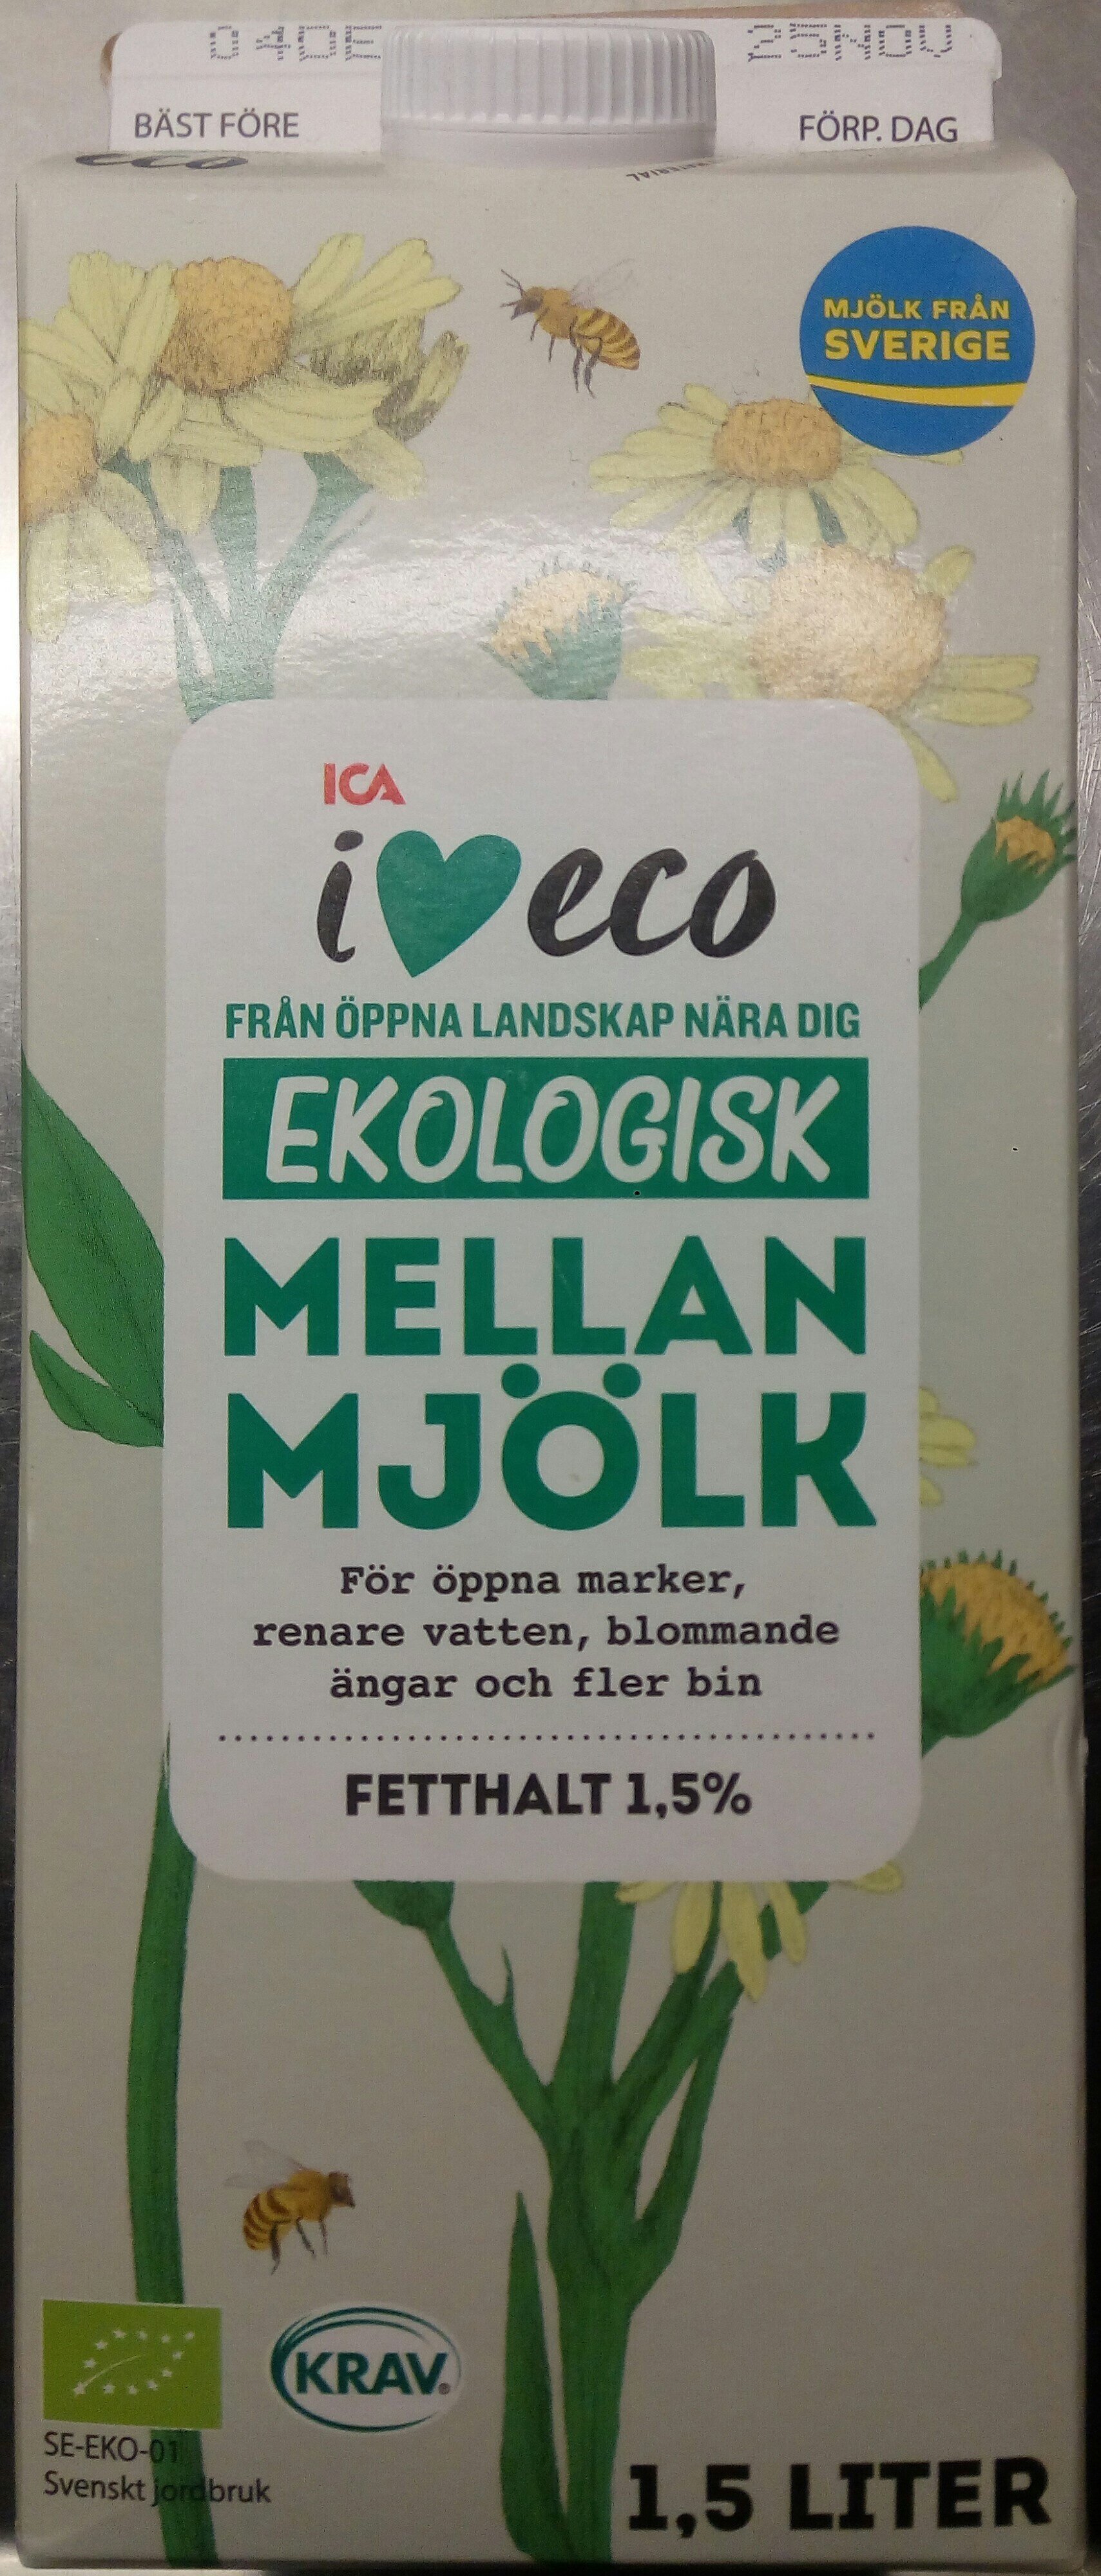 ICA i♥eco ekologisk mellanmjölk - Produkt